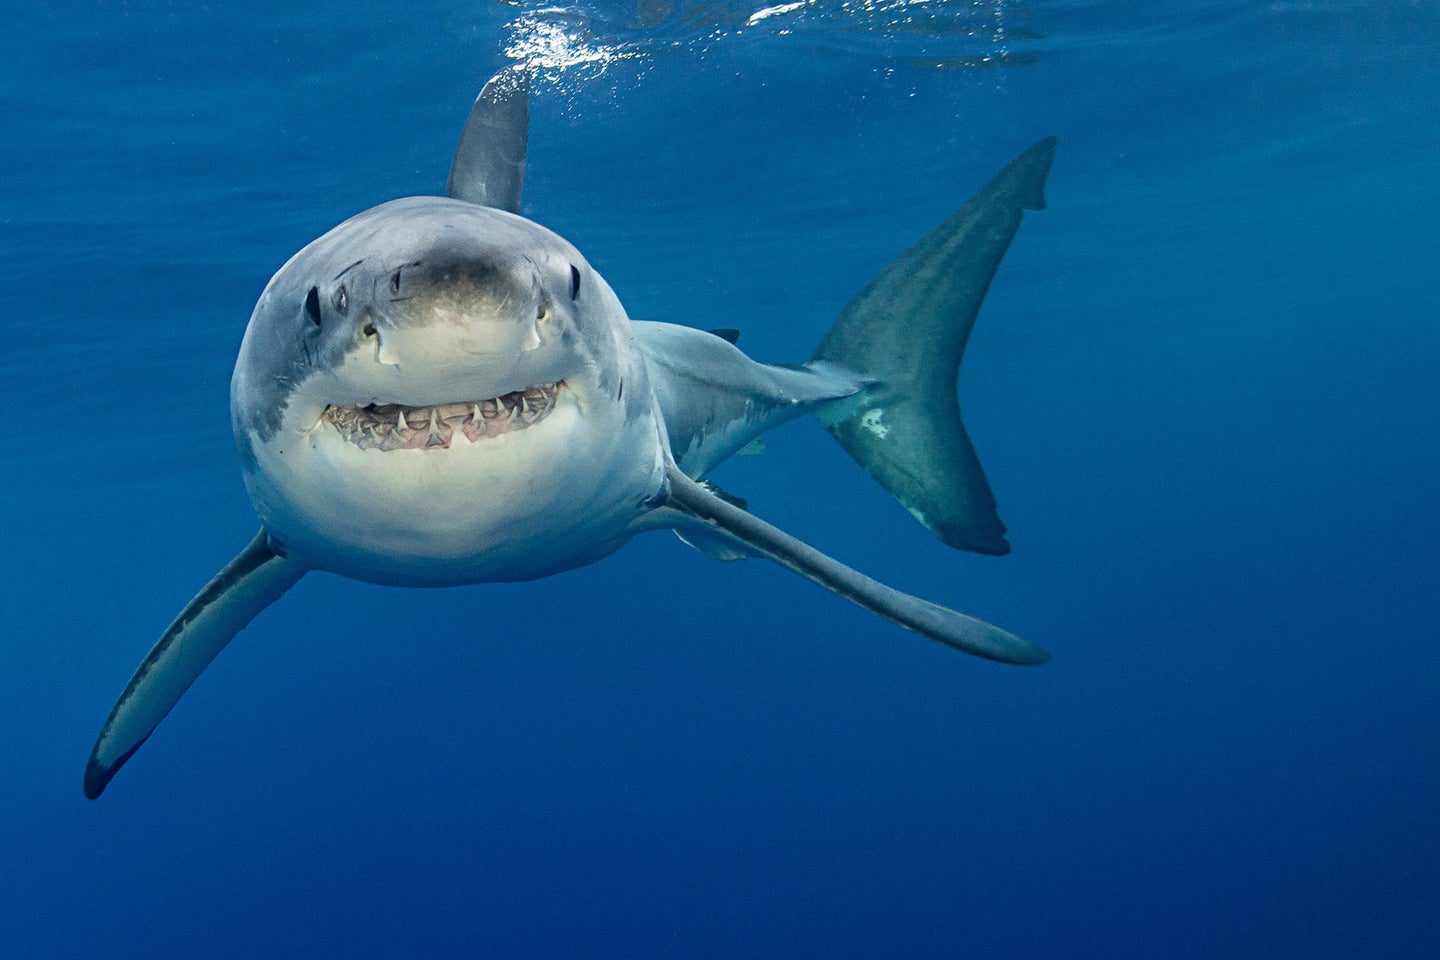 A shark swims through open water.